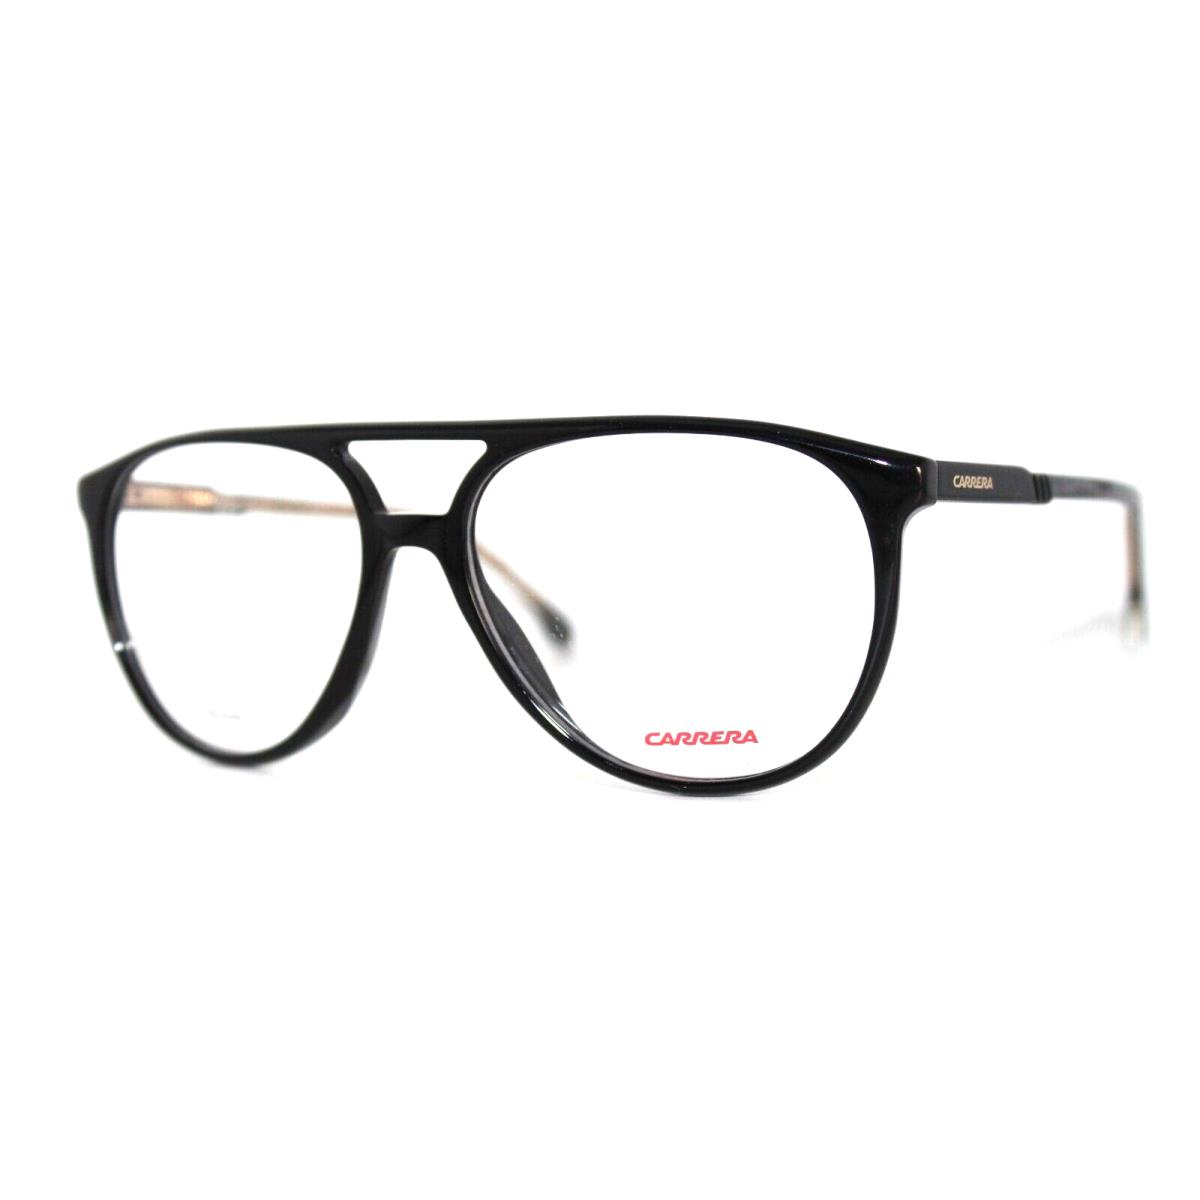 Carrera 1124 807 Black Eyeglasses Frames 54-15-140MM W/case - Gold, Frame: Black